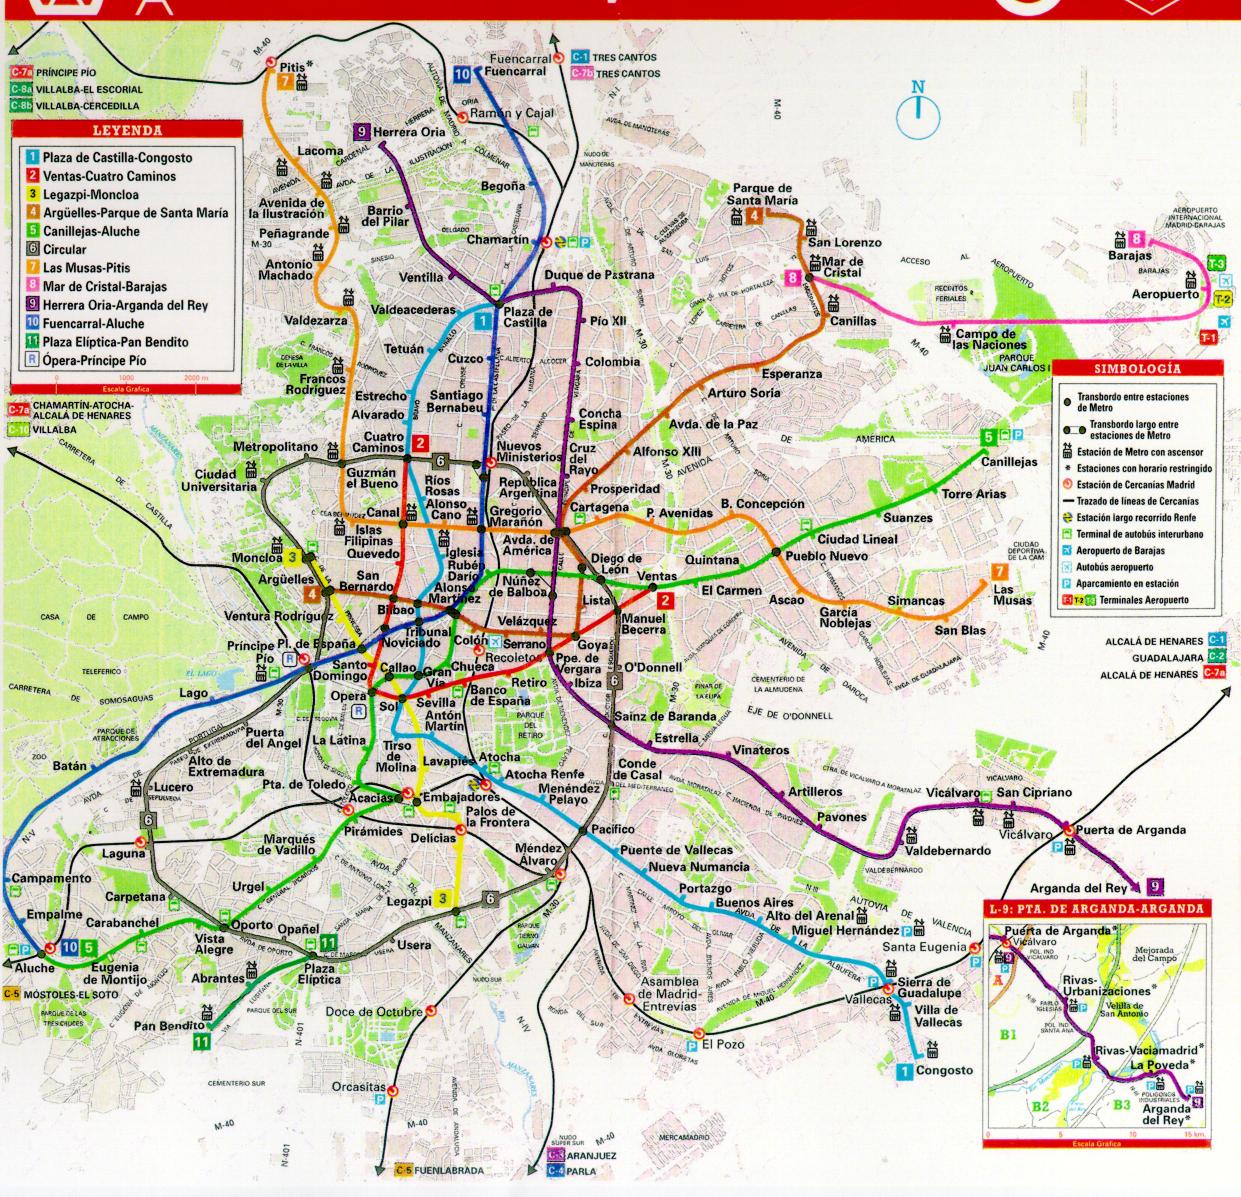 Madrid Transportation plan